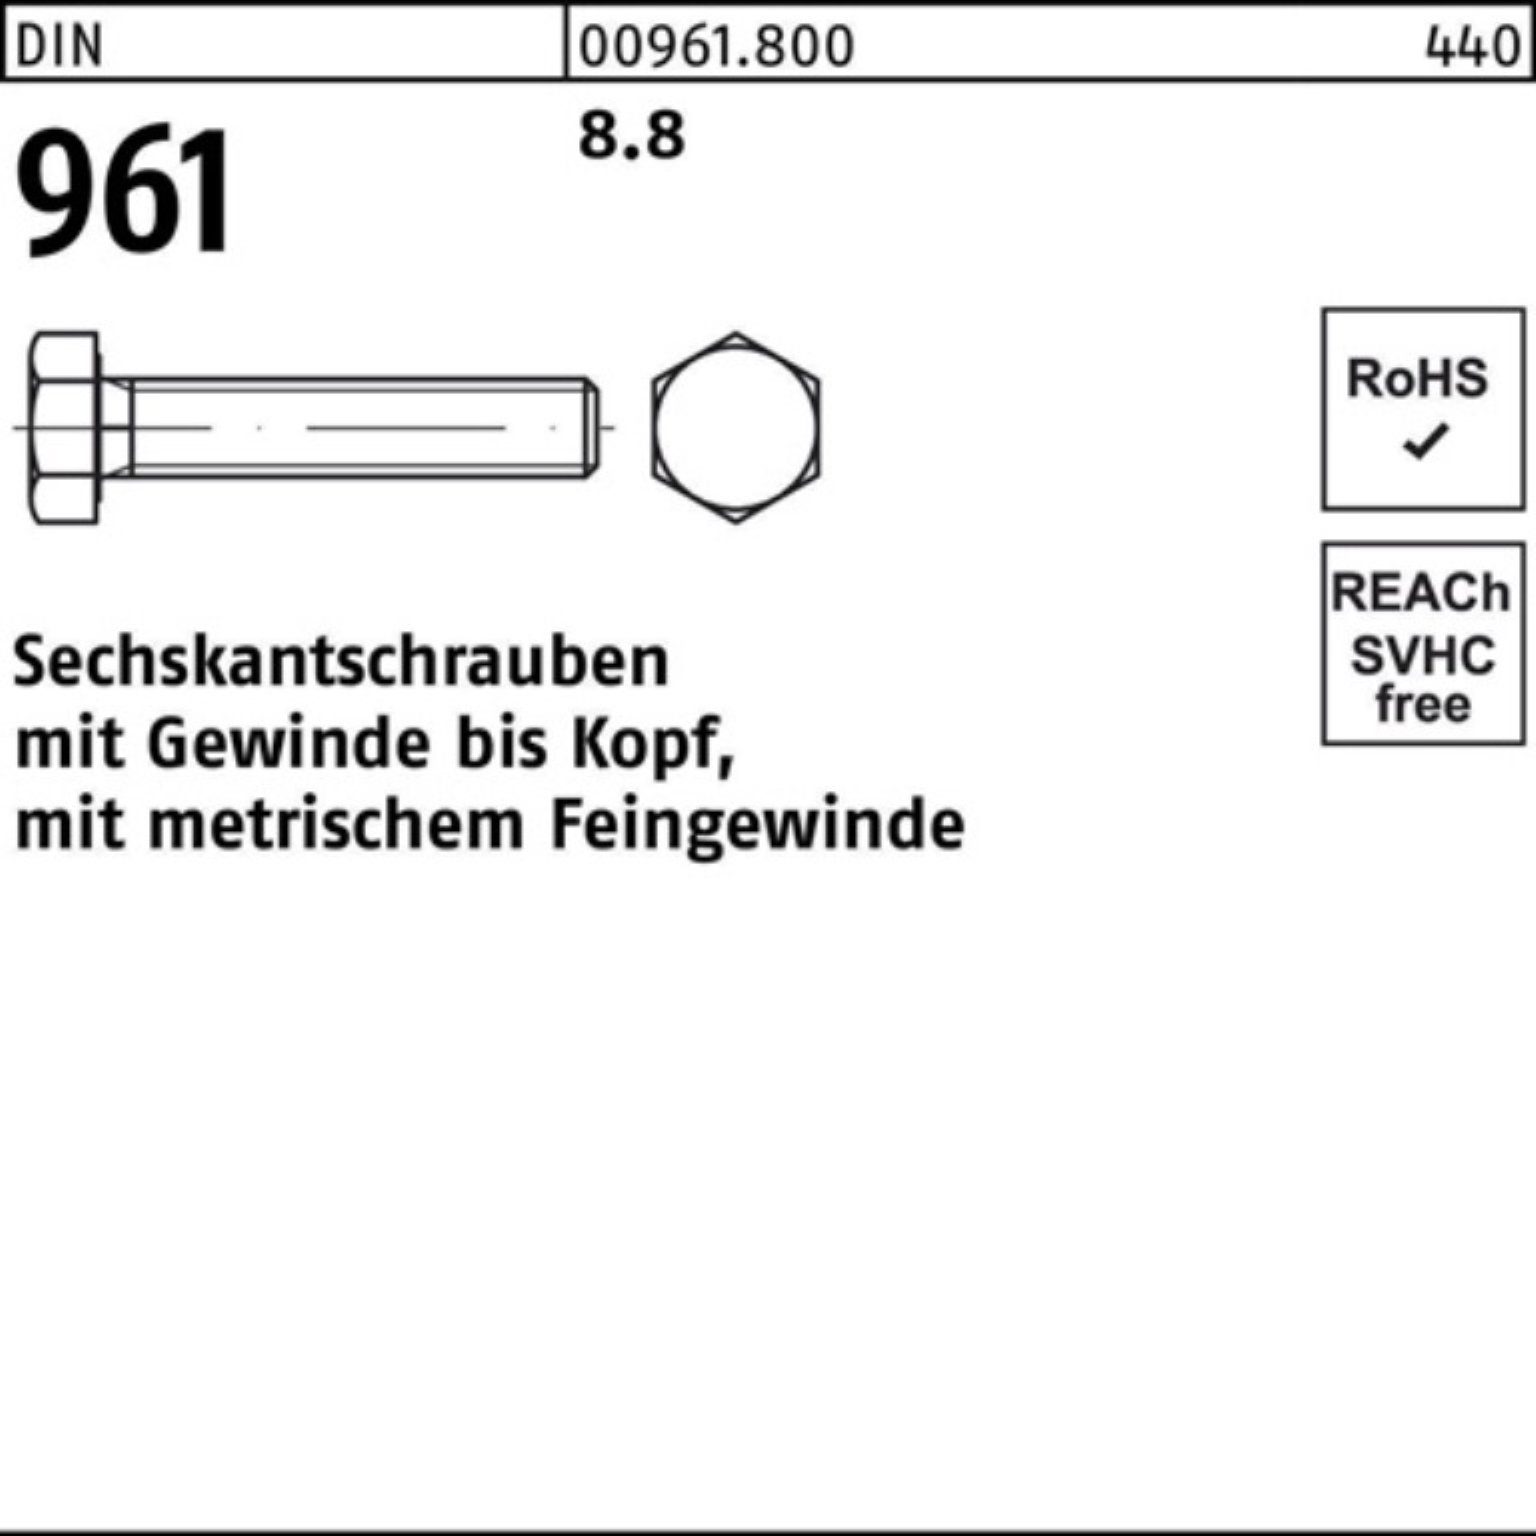 DIN Pack Sechskantschraube M18x1,5x 100er 8.8 DIN Sechskantschraube 961 Stück VG Reyher 55 25